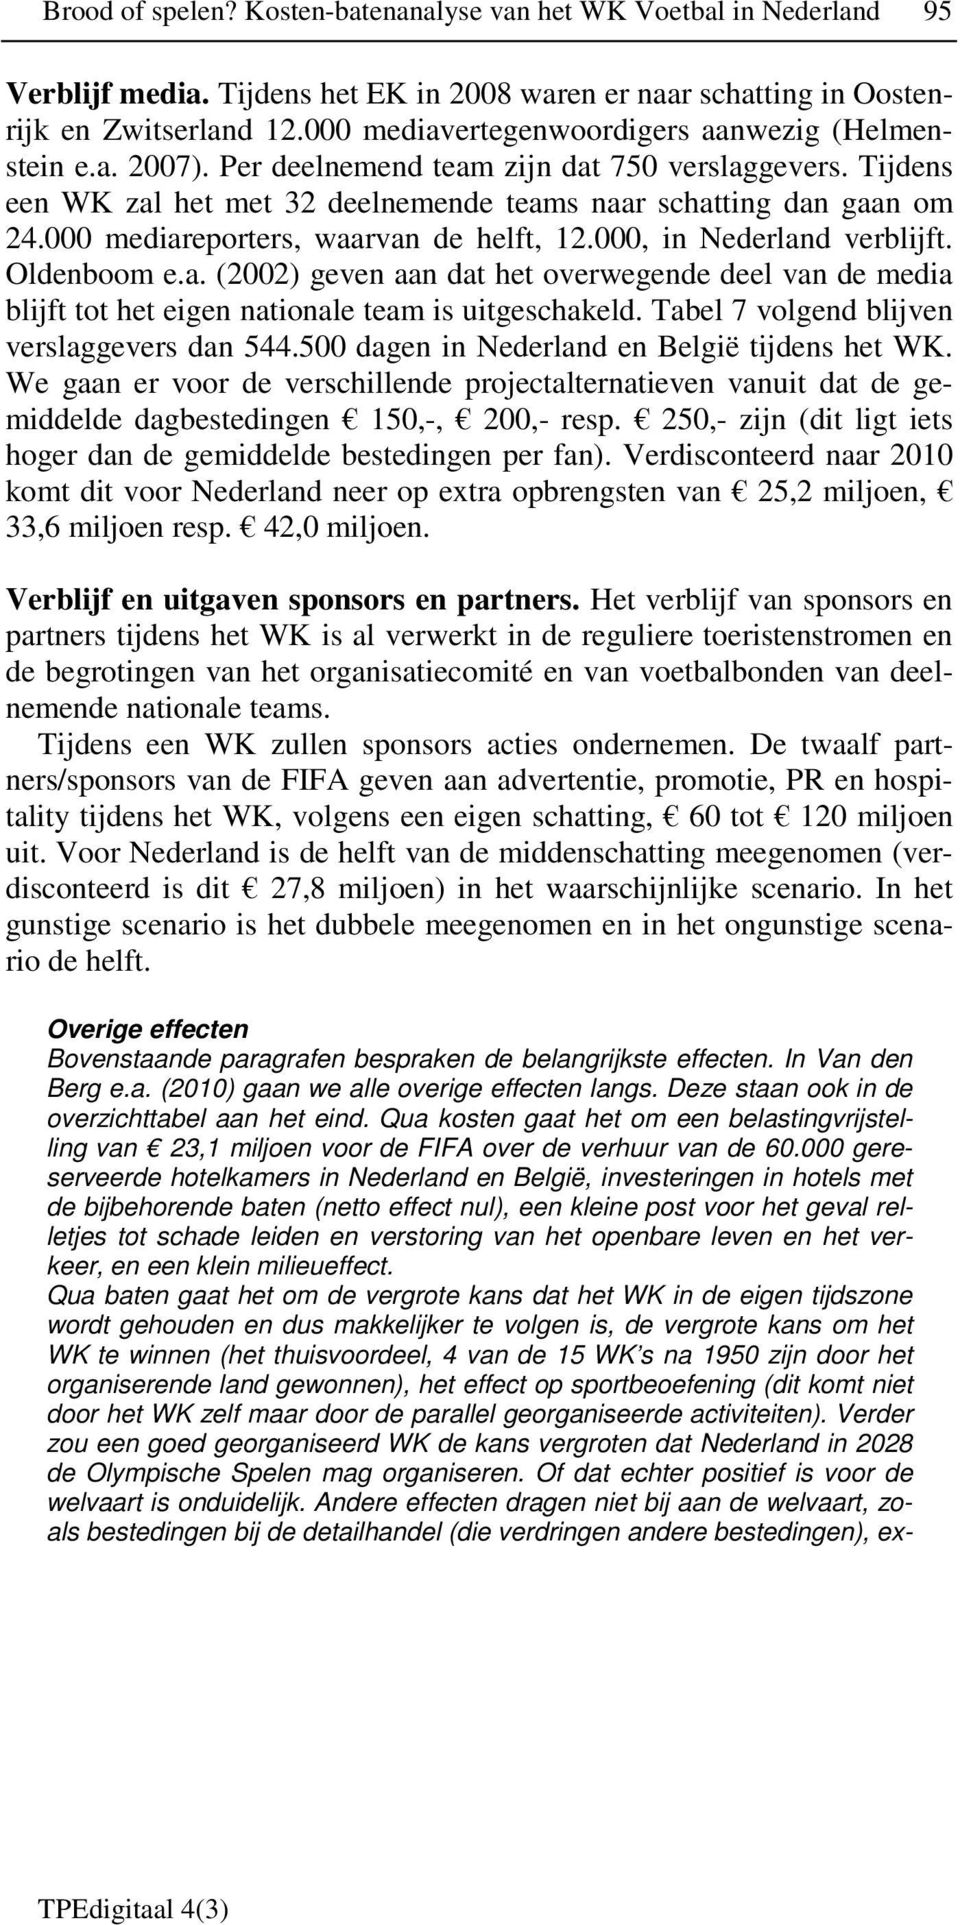 000 mediareporters, waarvan de helft, 12.000, in Nederland verblijft. Oldenboom e.a. (2002) geven aan dat het overwegende deel van de media blijft tot het eigen nationale team is uitgeschakeld.